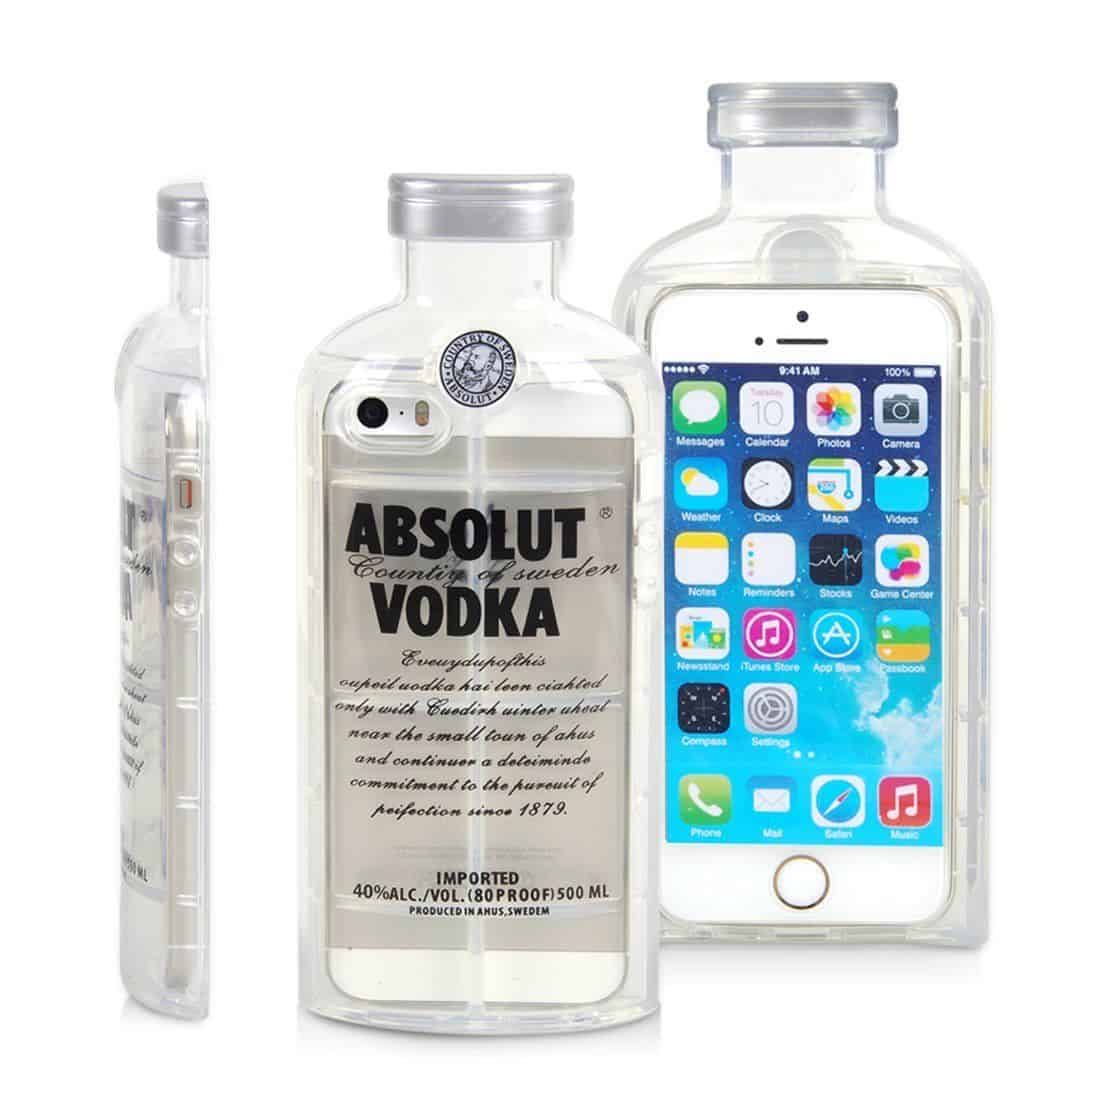 iPhone Absolut? Smartphone Hülle „Vodka“ fürs iPhone 4, 5 6 und Plus ab 2,36 Euro (gratis Versand)!